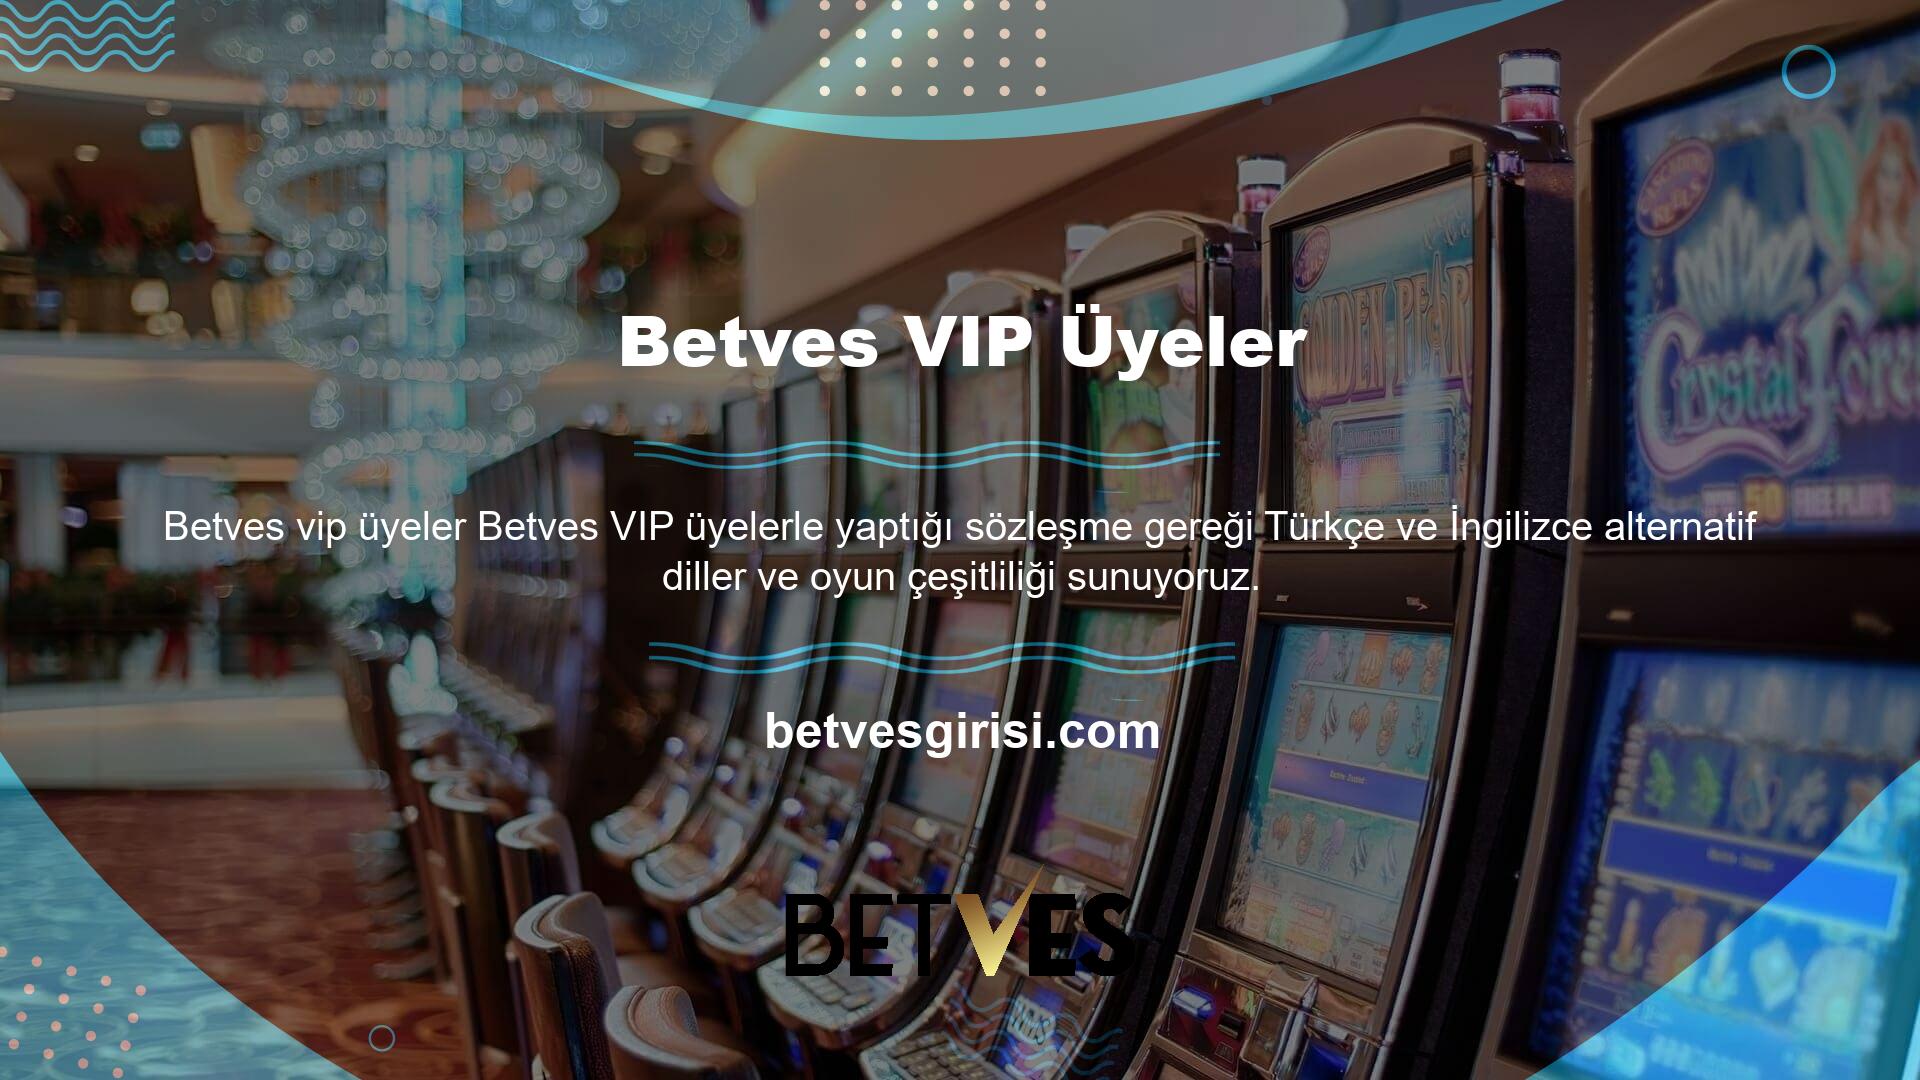 Bu web sitesinde sunulan hizmetler arasında spor bahisleri, casino oyunları, poker oyunları ve sanal oyunlar bulunmaktadır